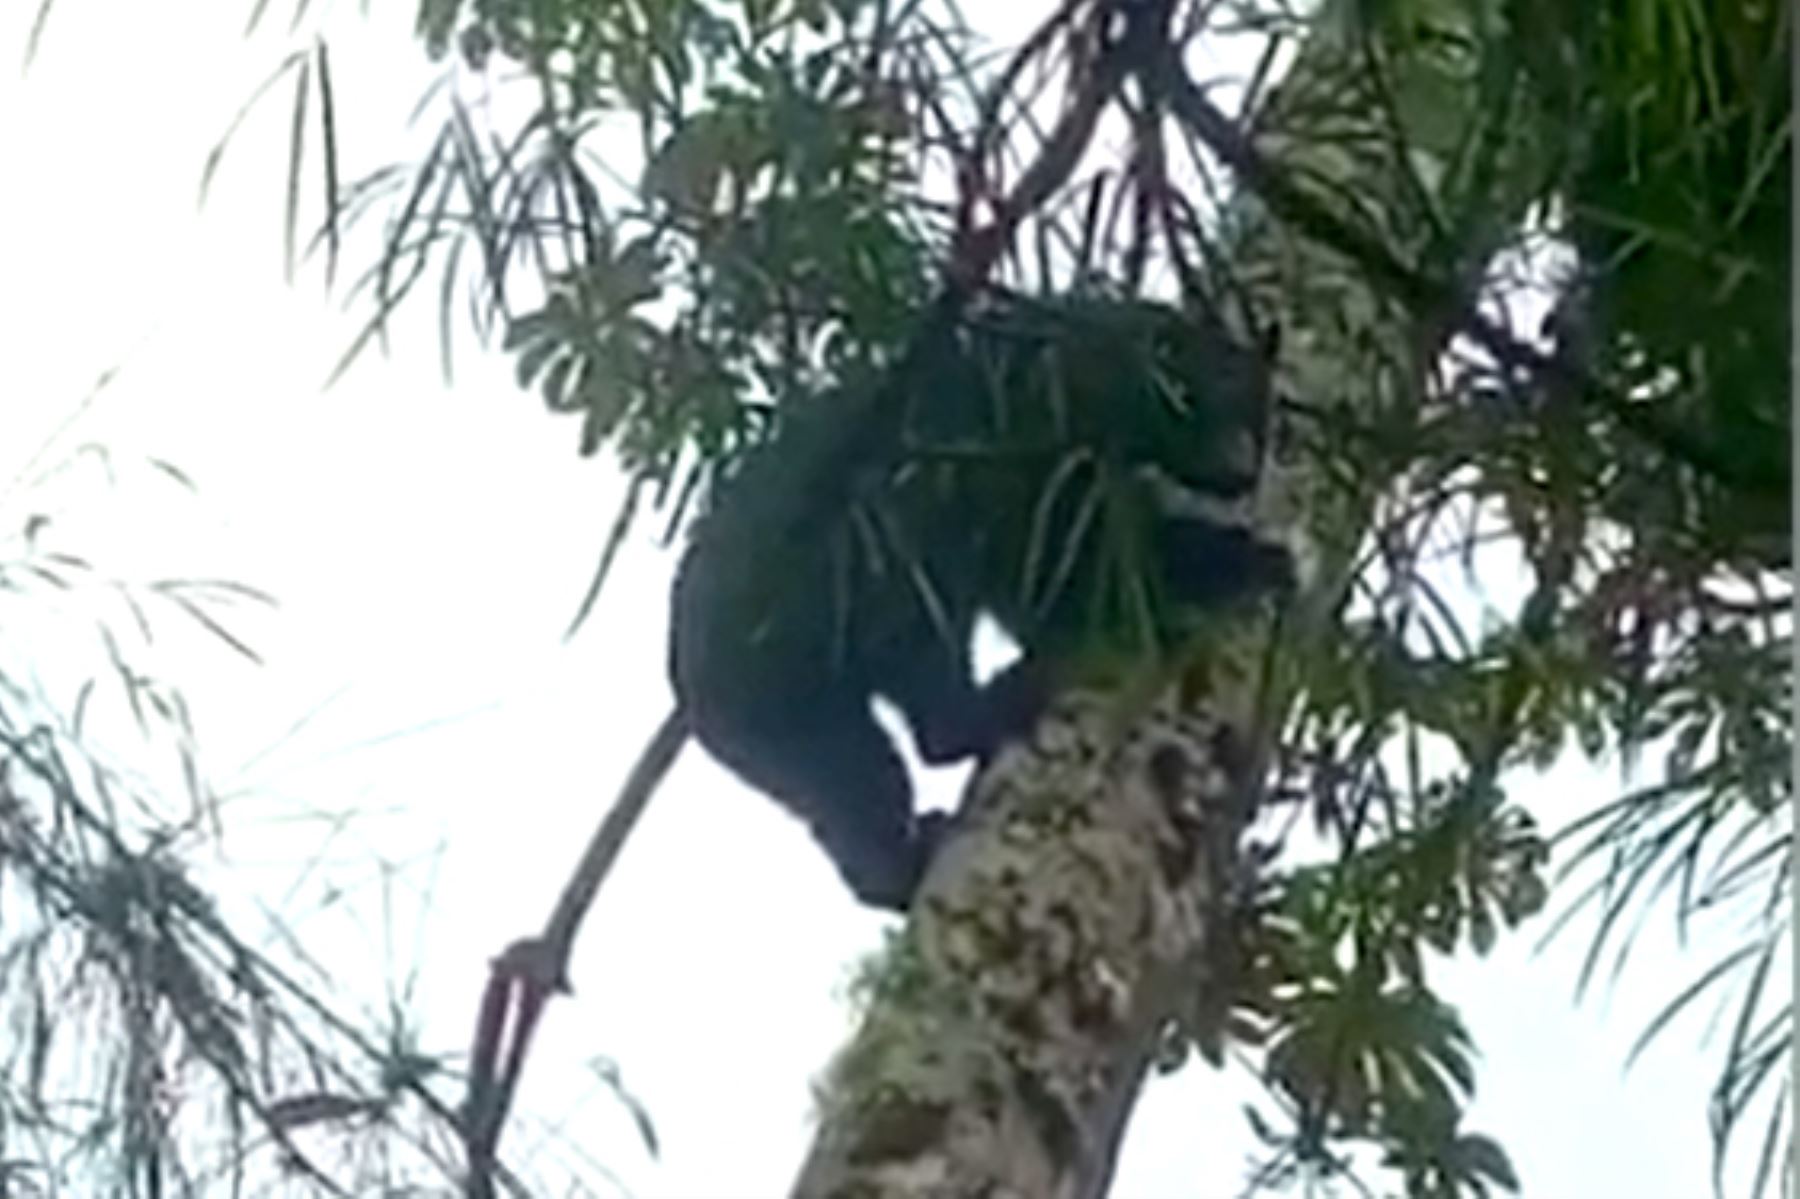 Guardaparques registran increíbles imágenes de oso de anteojos en el parque nacional Yanachaga Chemillén, en la región Pasco. Foto: Sernanp.